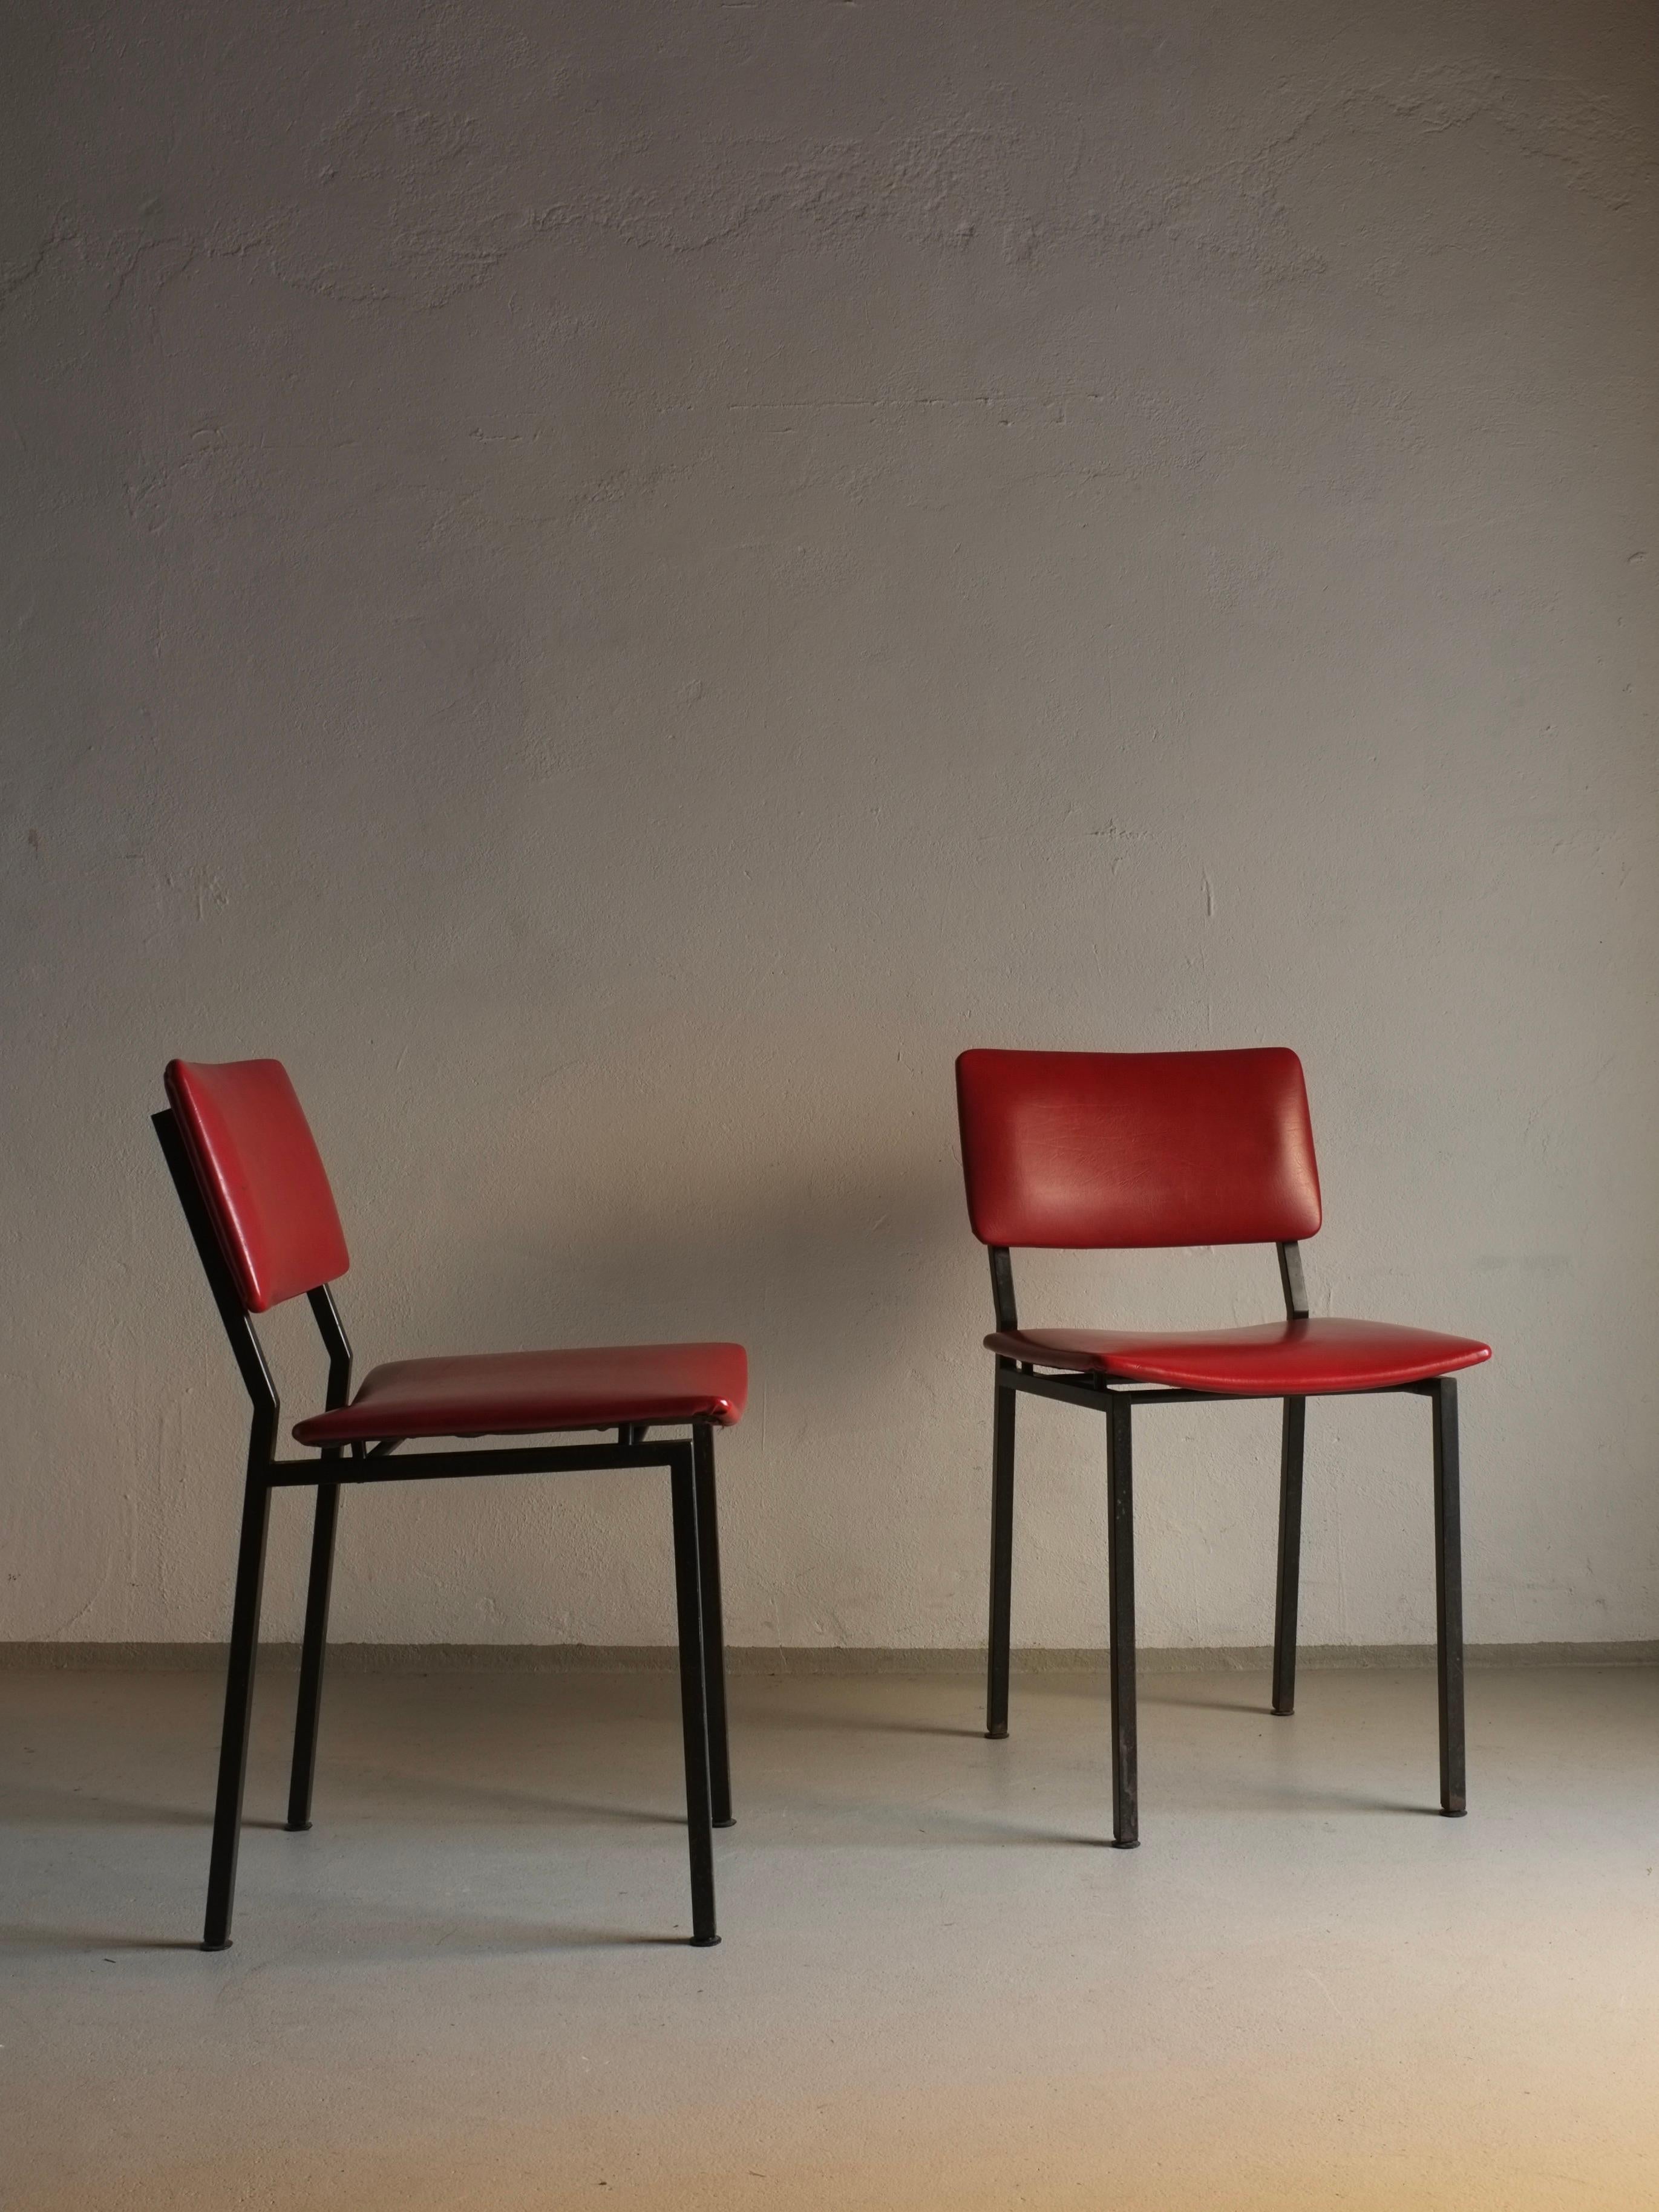 2 Stühle aus schwarzem Vintage-Metall mit roter Vinylpolsterung, entworfen von Gerrit Veenendaal für Kembo Rhenen.

Zusätzliche Informationen:
Land der Herstellung: Niederlande
Zeitraum: 1960s
Abmessungen: B 43 B x 53 T x 77 H cm
Sitzfläche: 49